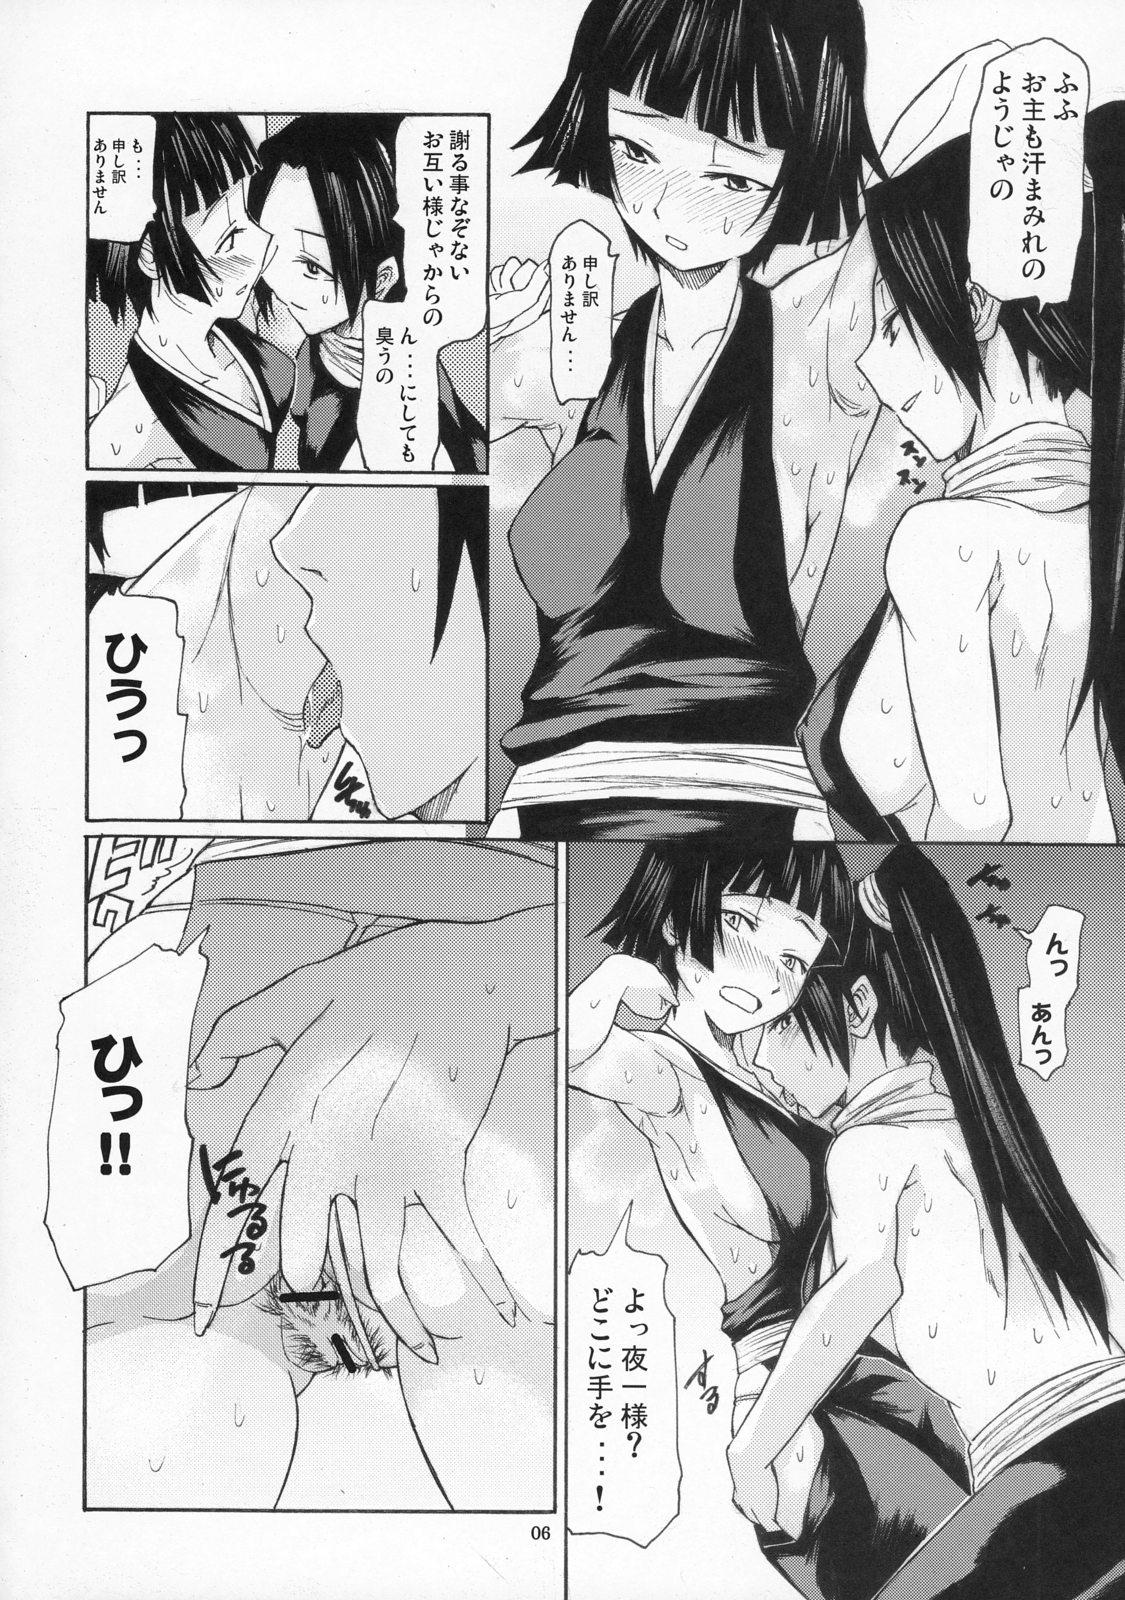 Moaning Yorozu fetishism Anime - Page 5